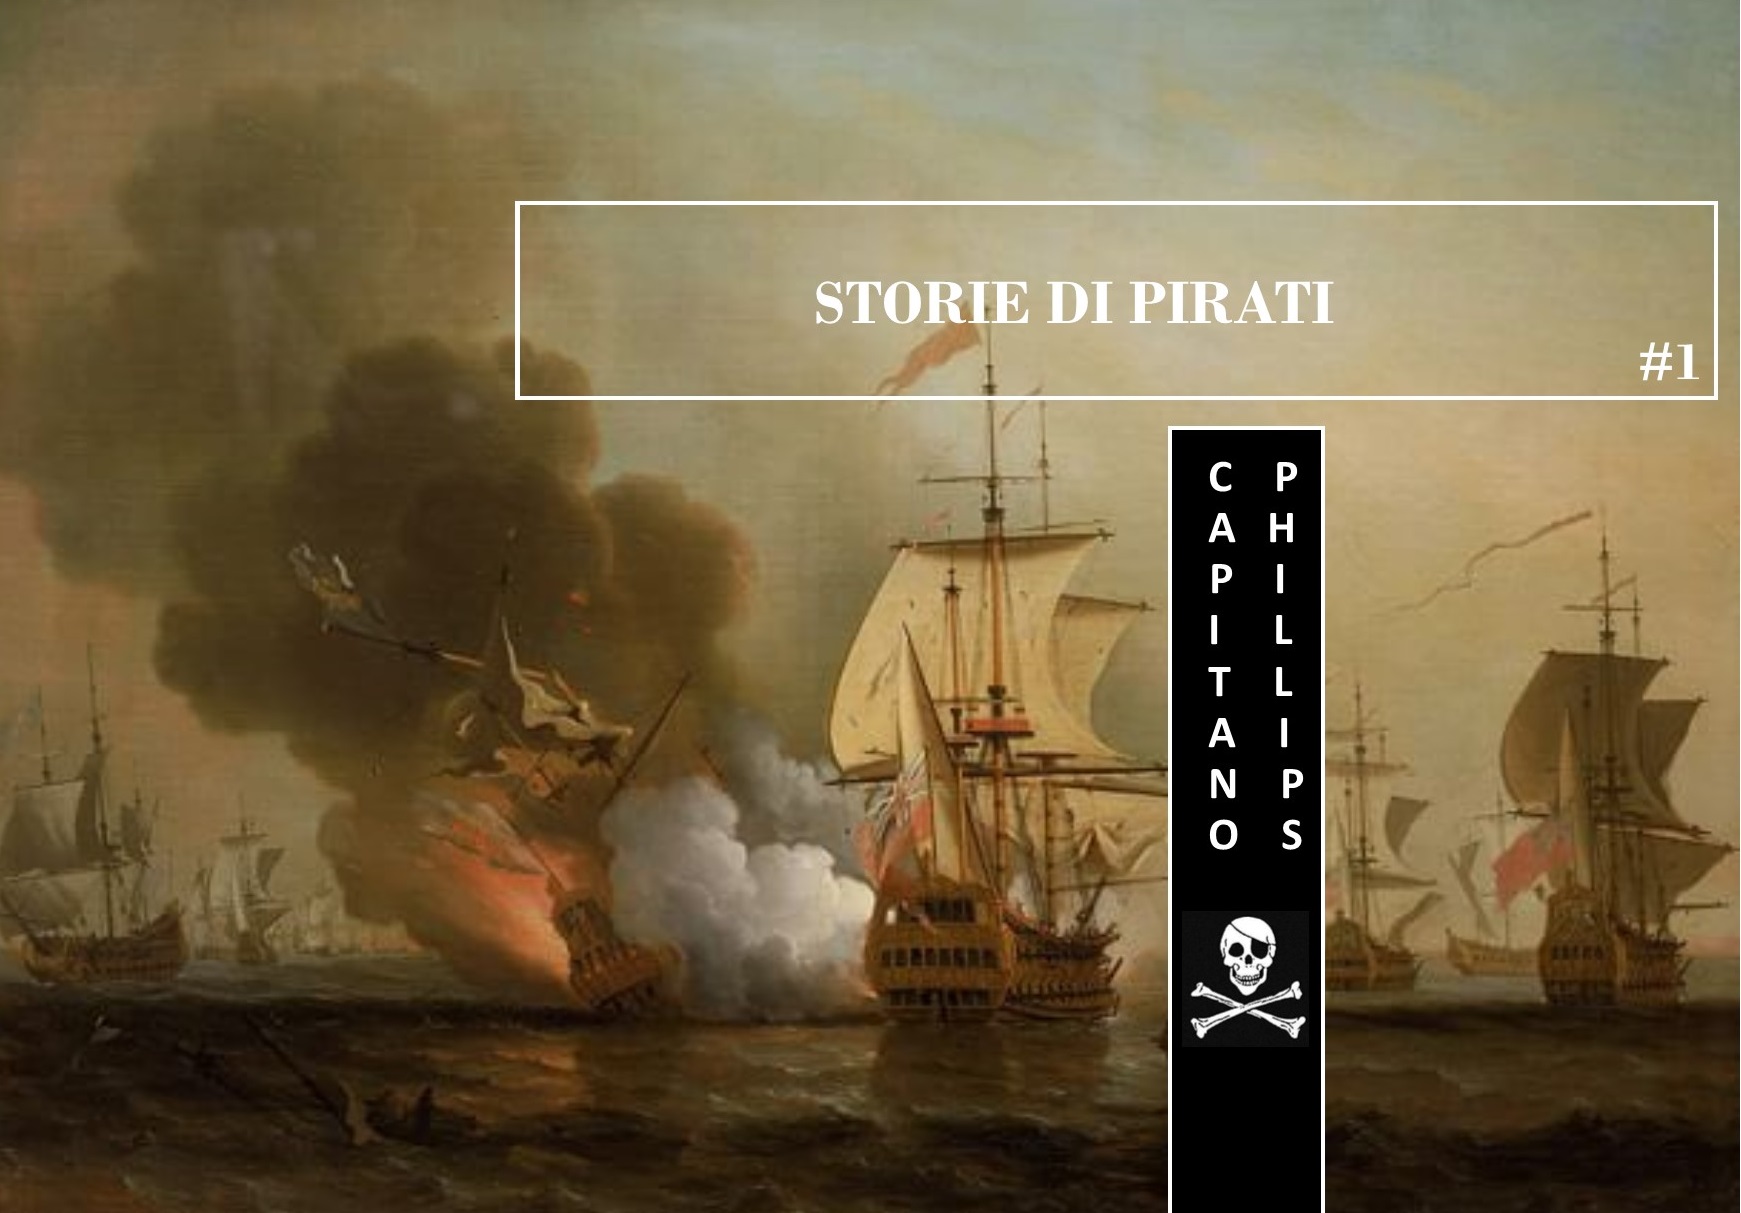 Storie di Pirati #1: il Capitano Phillips e le regole vigenti a bordo della Revenge